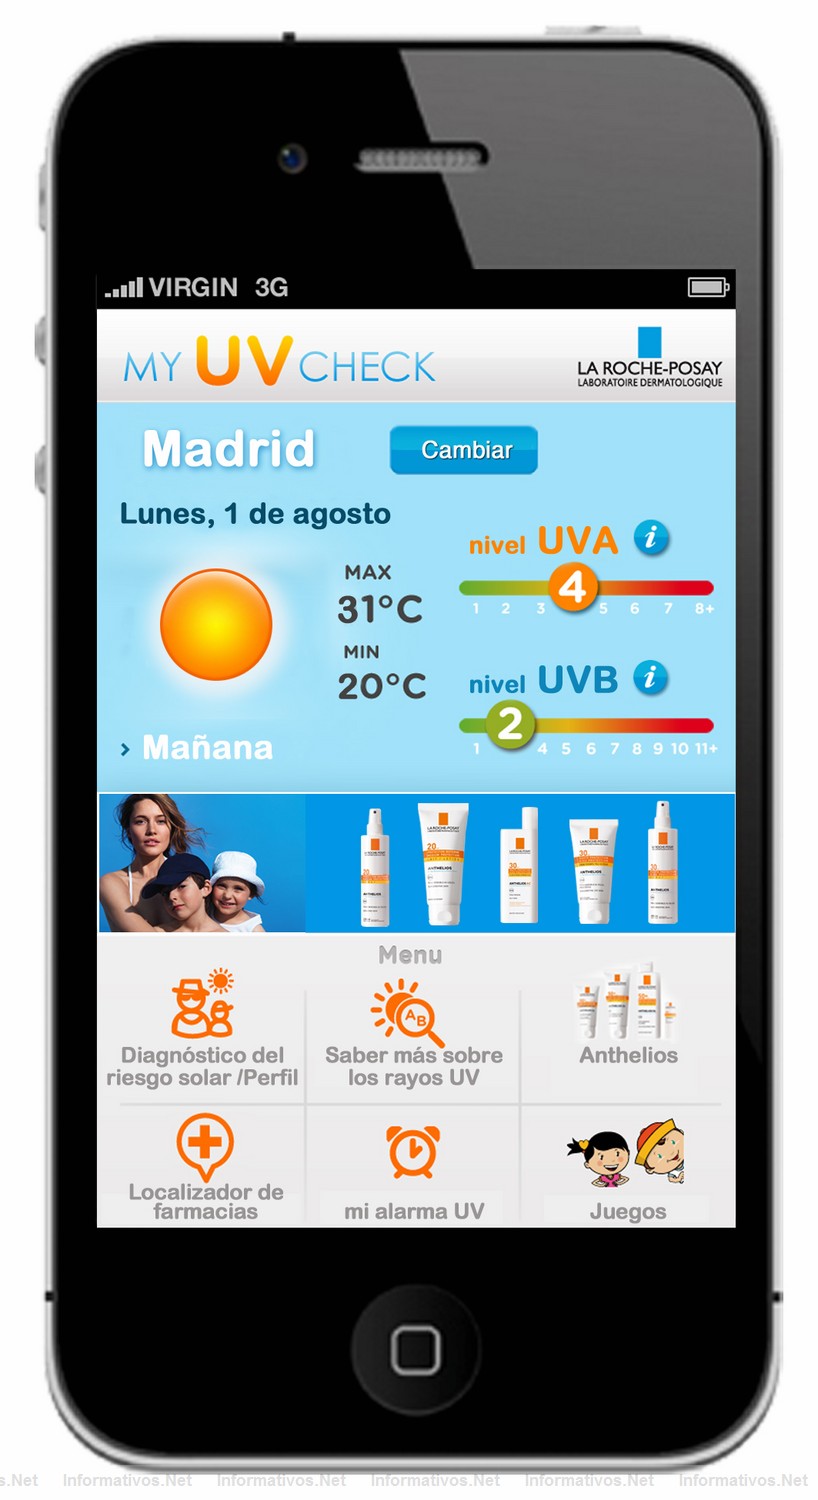 La Roche-Posay lanza una app de iPhone y web para informar sobre los efectos del sol en la piel